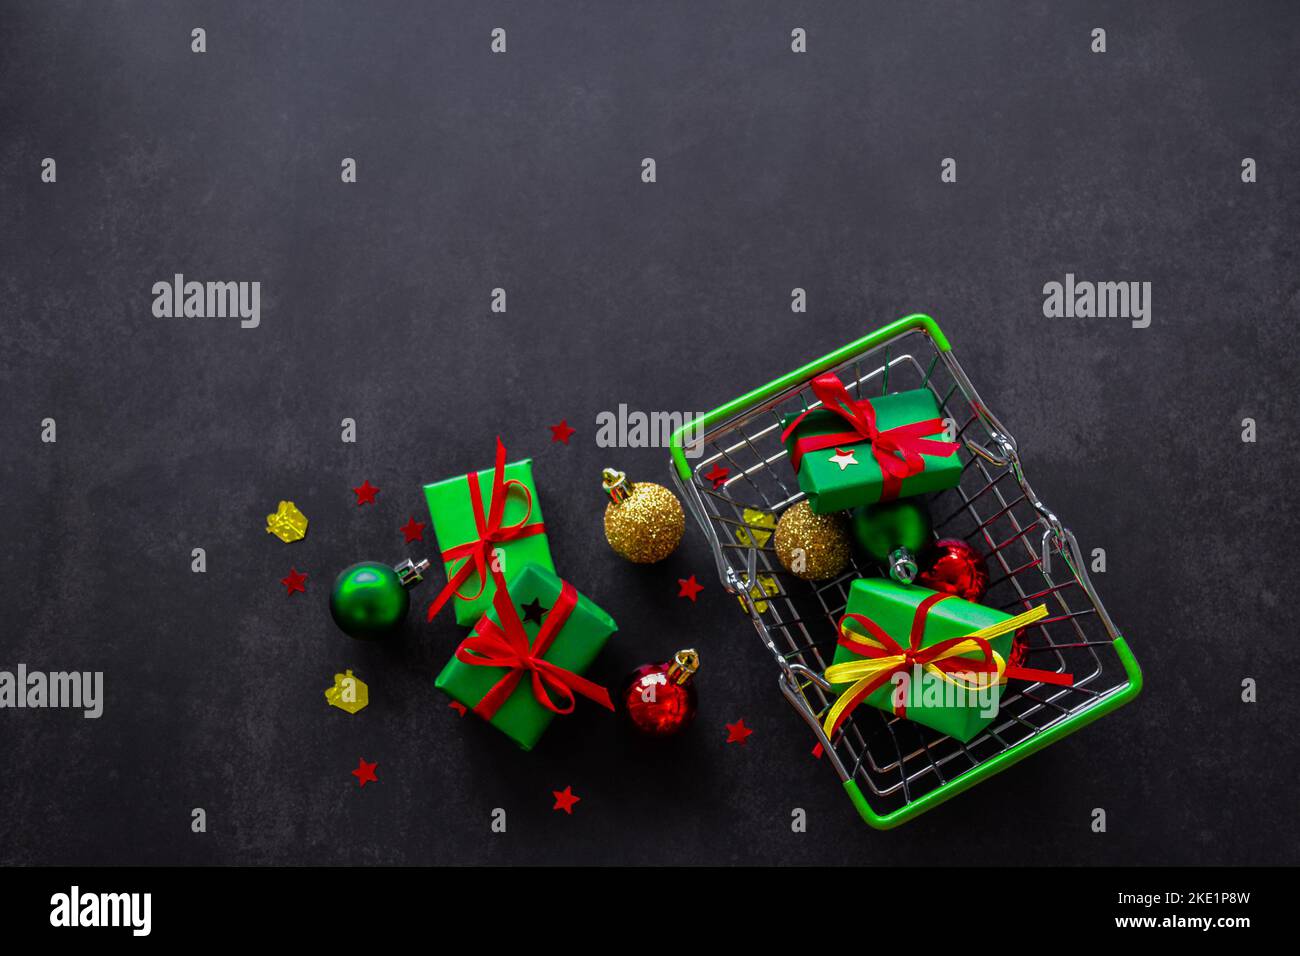 Vue de dessus du panier avec cadeaux en papier vert, noeuds rouges et jaunes, boules de Noël de rouge, vert, or sur fond noir. Quelques cadeaux, bal Banque D'Images